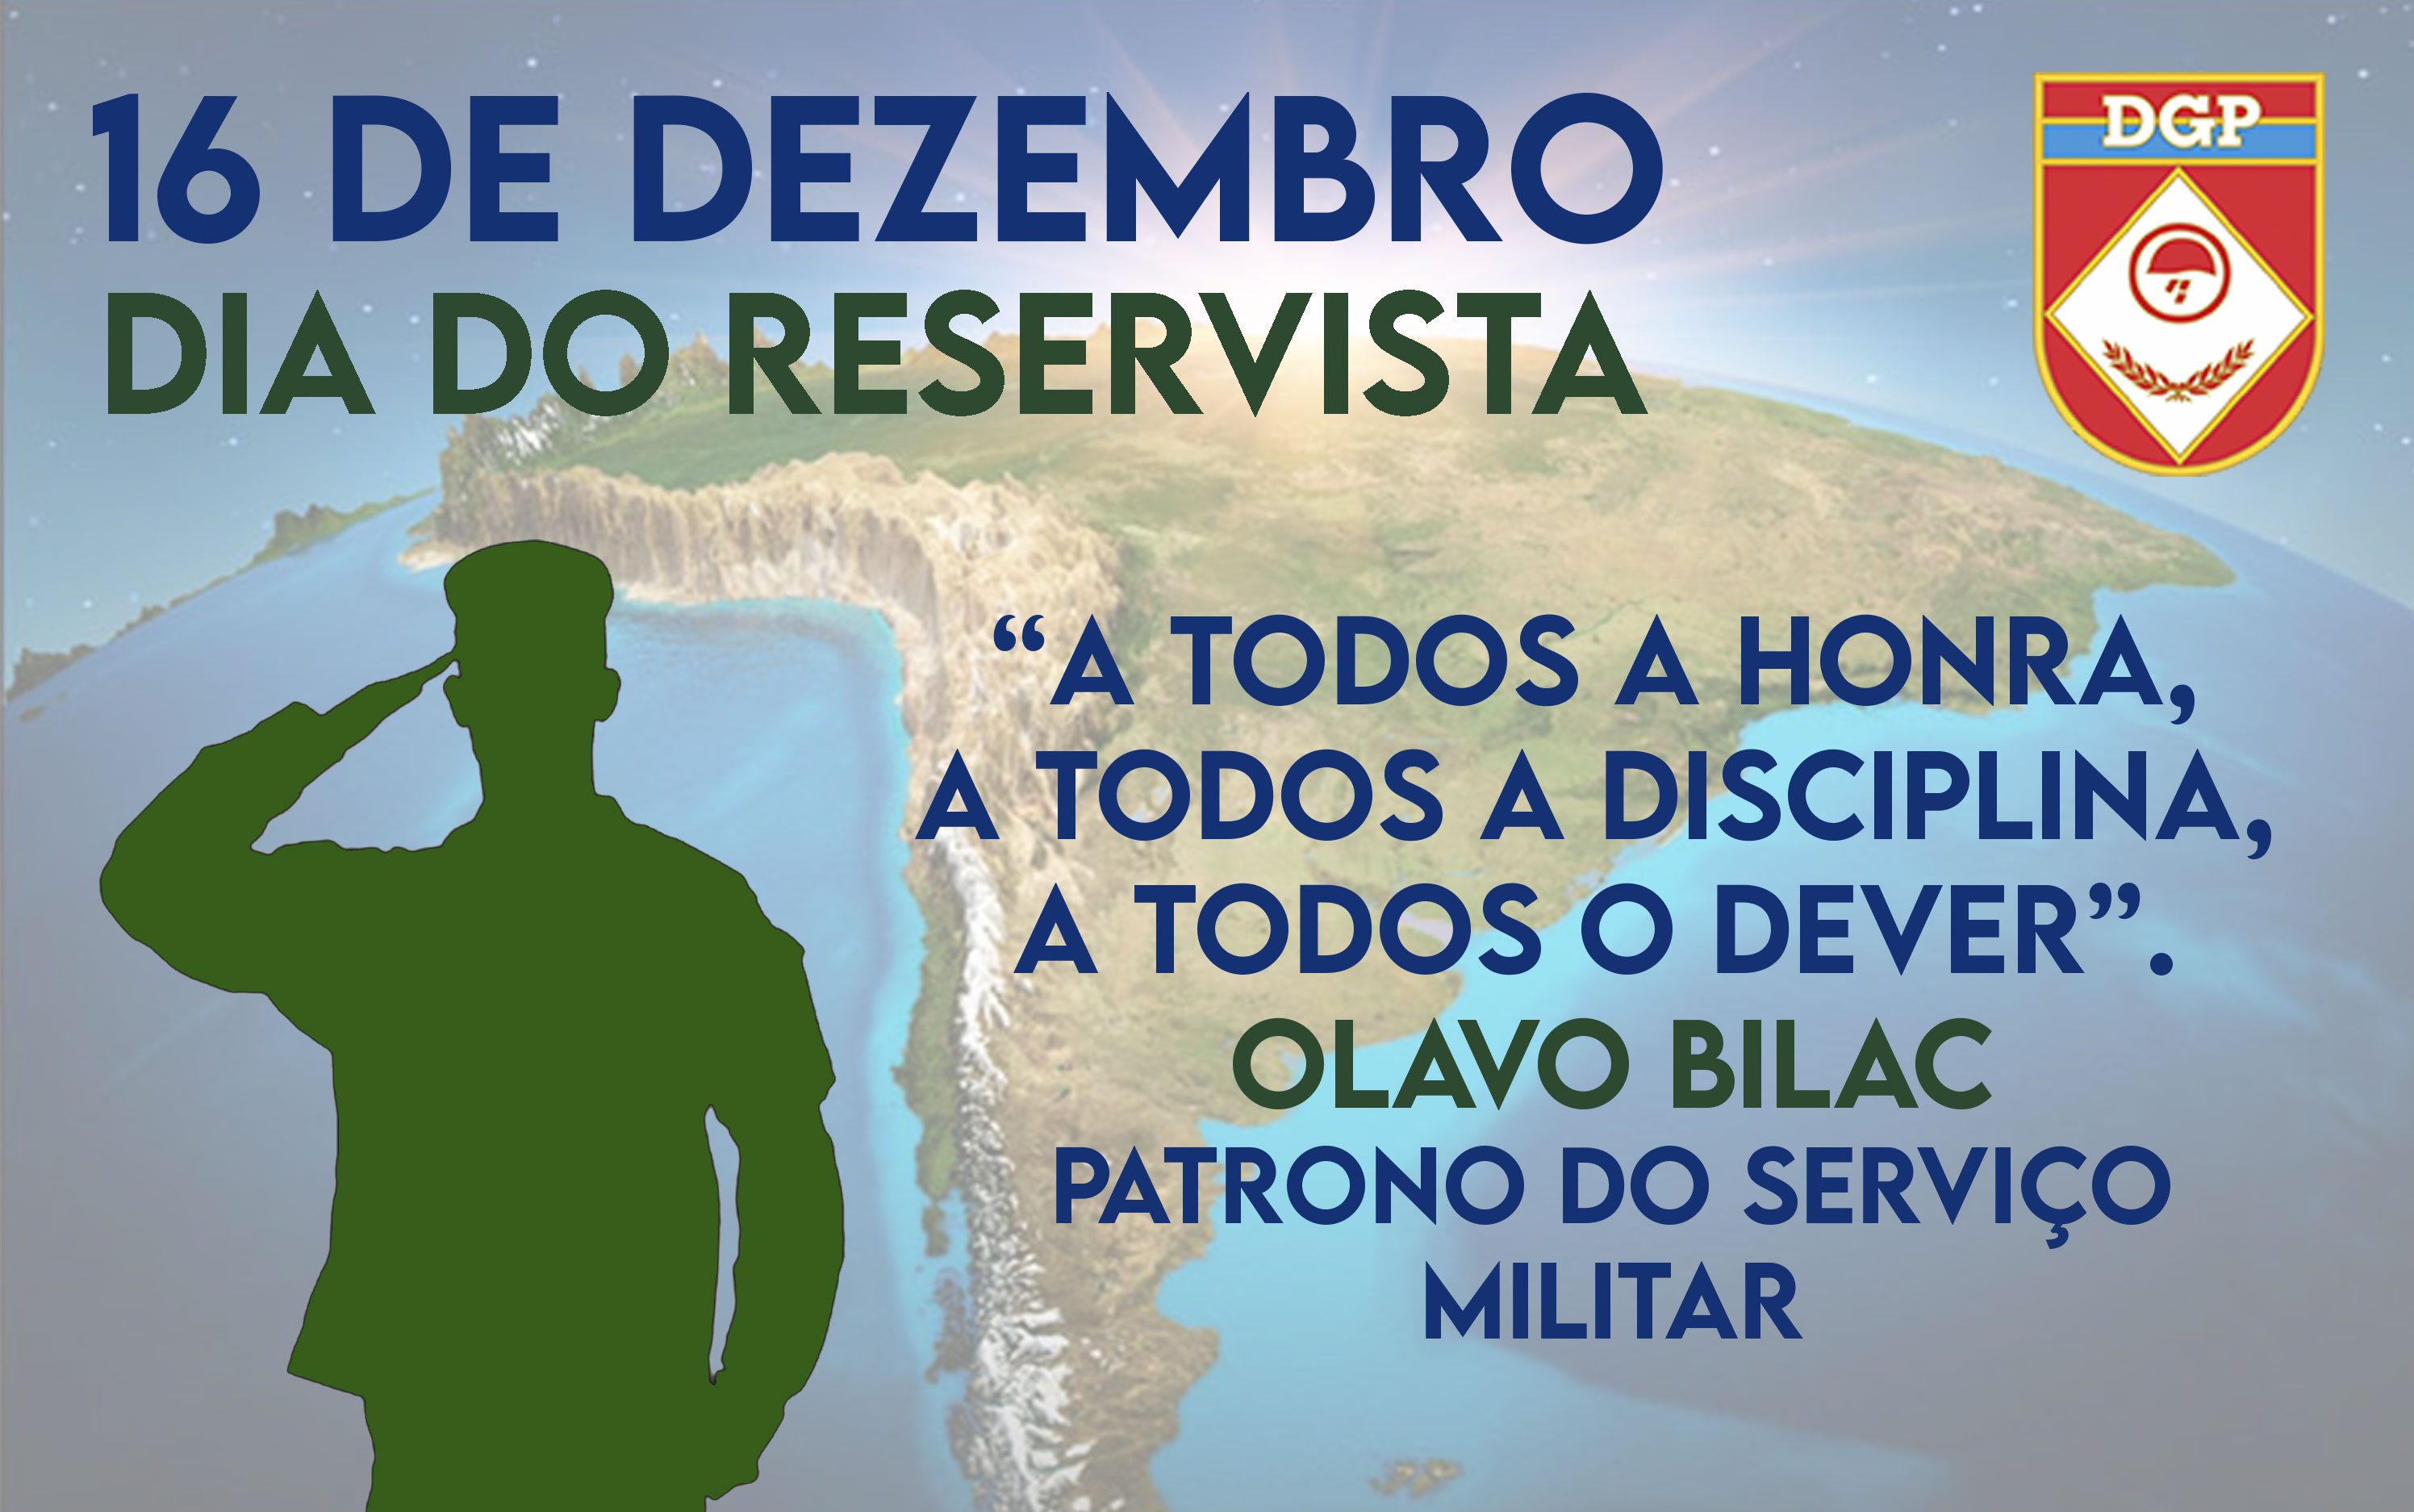 Exército Brasileiro 🇧🇷 on X: 16 de dezembro - Dia do Reservista